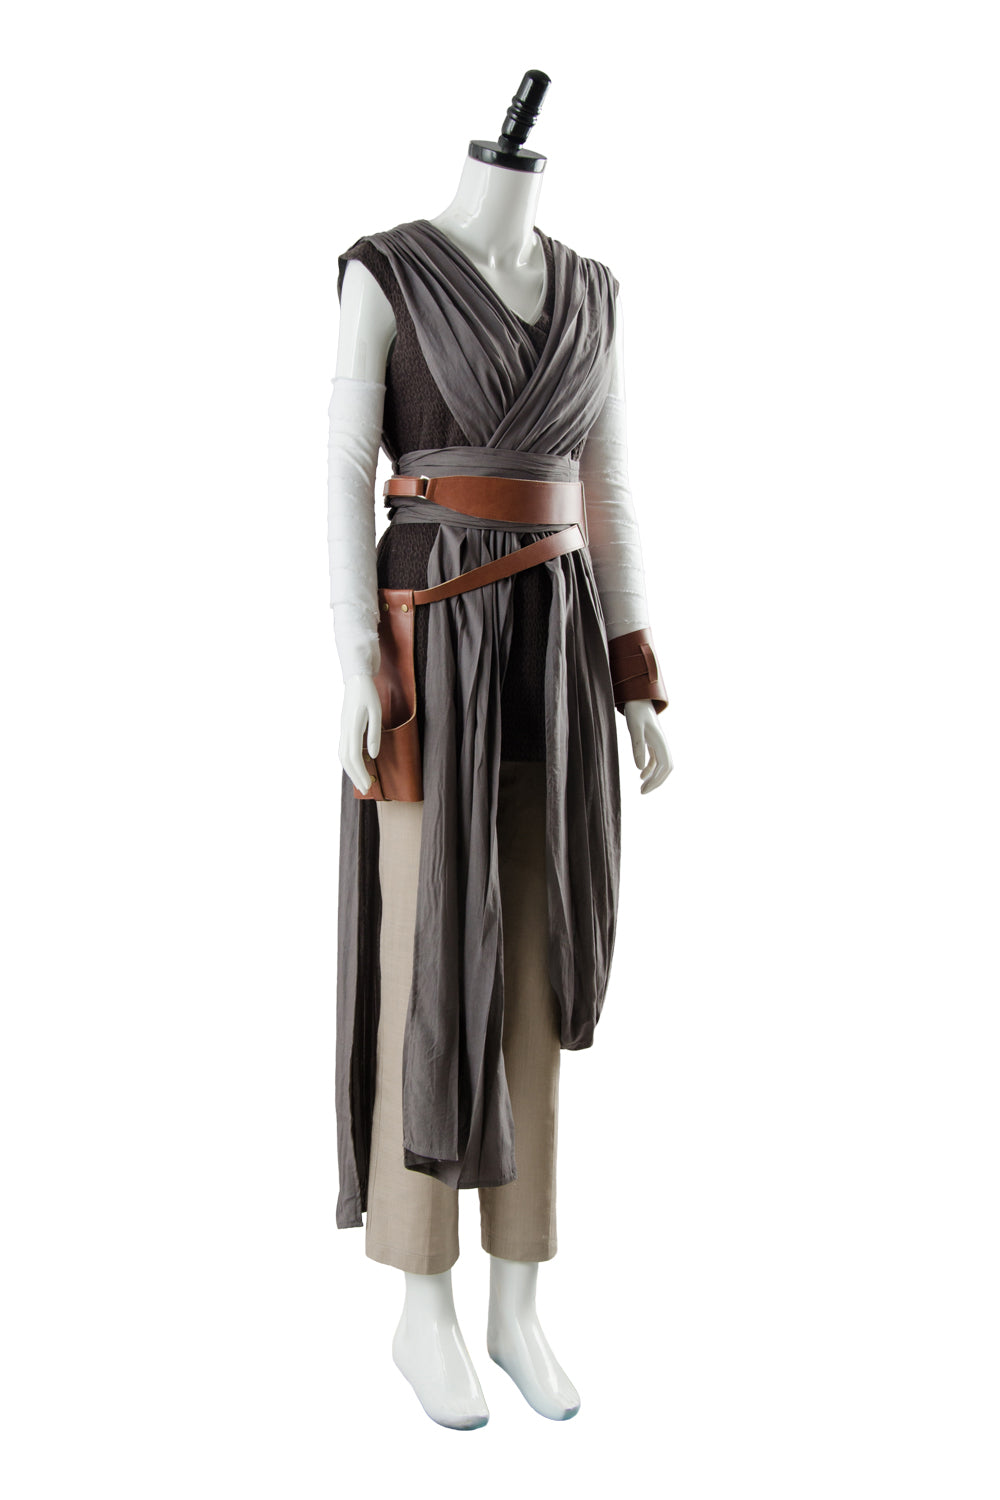 Die letzten Jedi Rey Outfit Ver.2 Cosplay Kostüm NEU